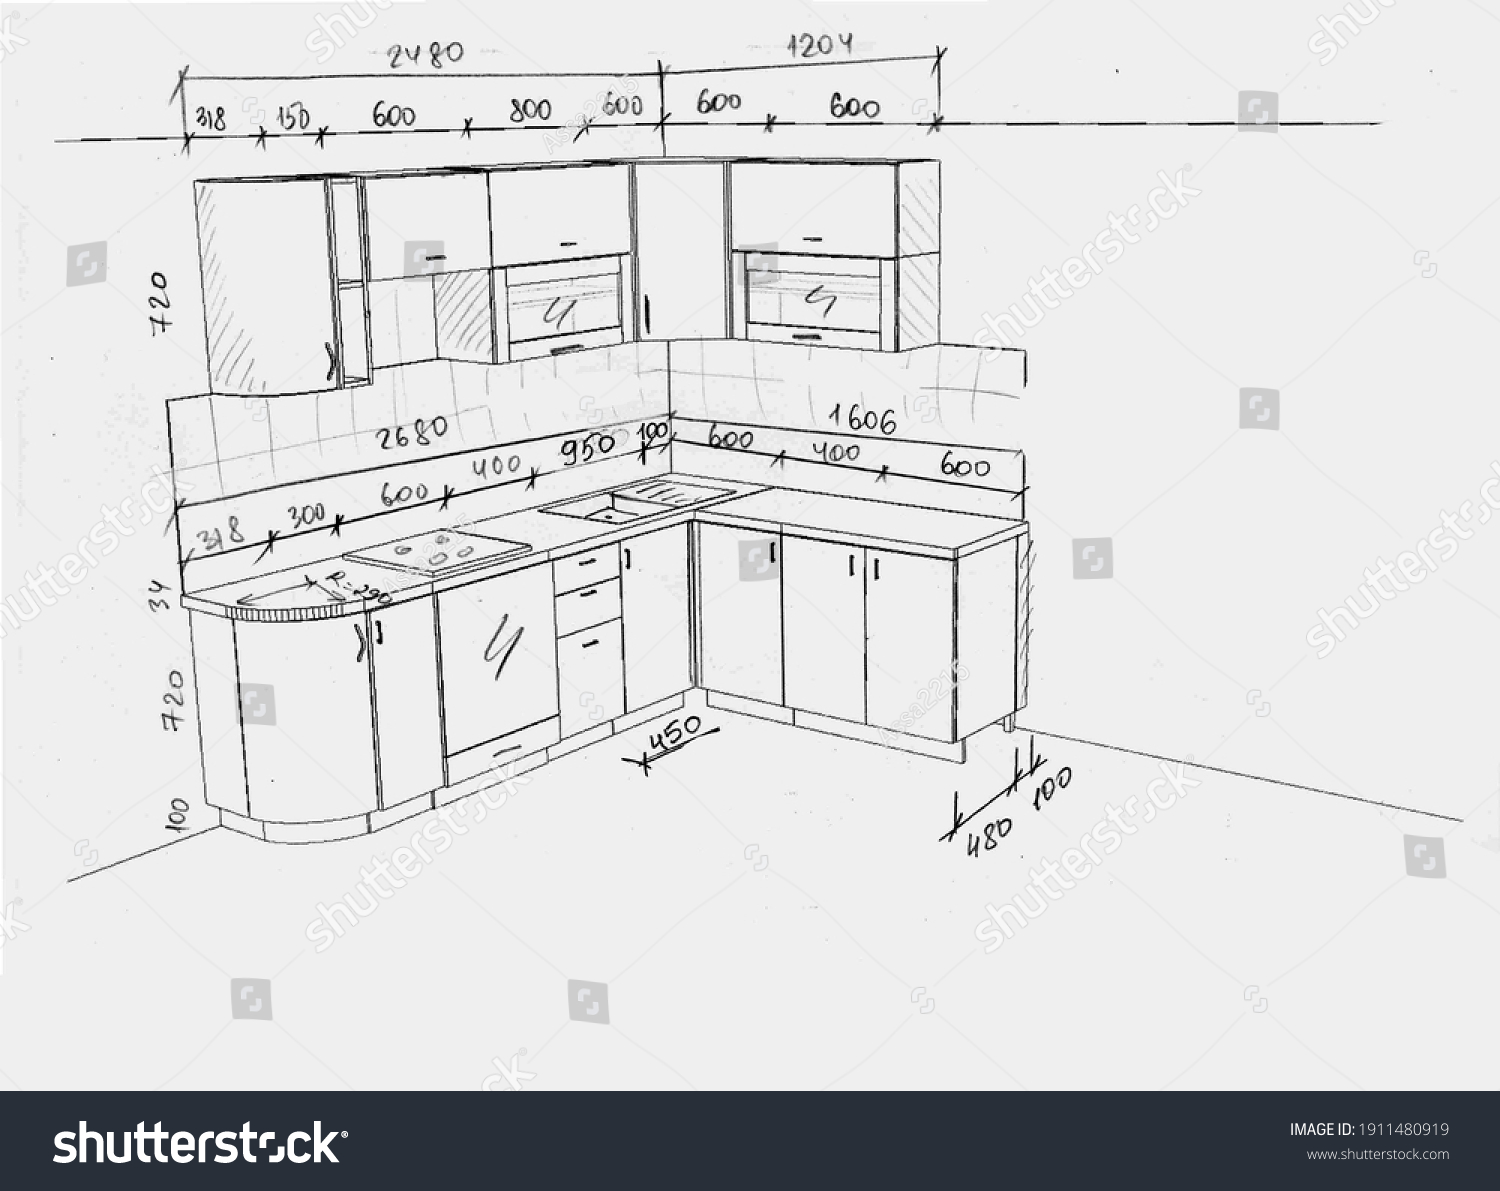 оптимальная высота кухонной мебели